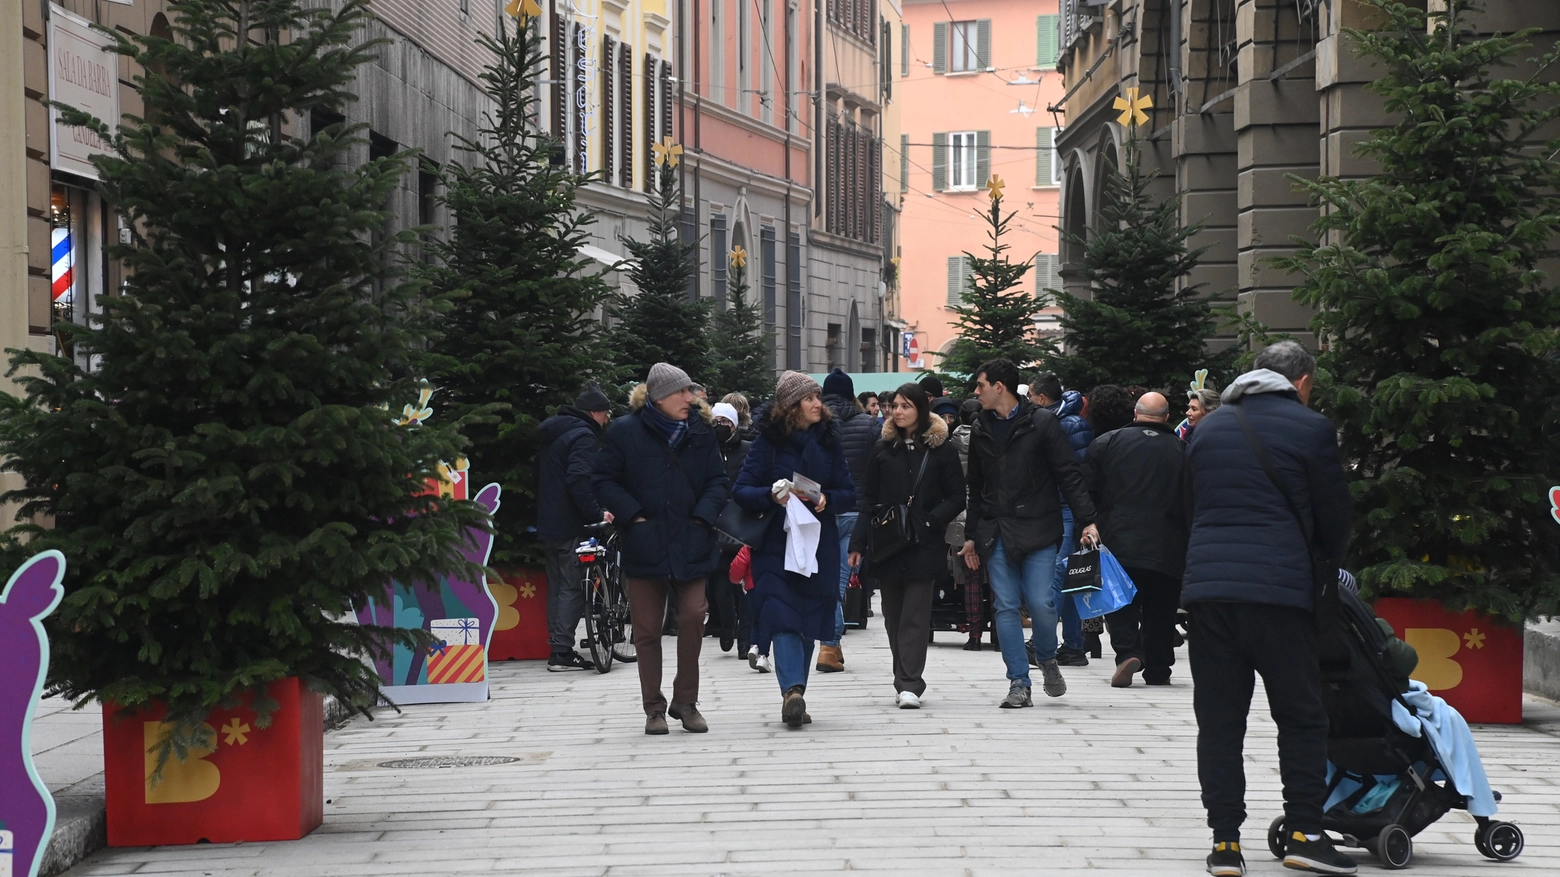 Via de' Carbonesi aperti ai pedoni durante lo shopping natalizio (Fotoschicchi)